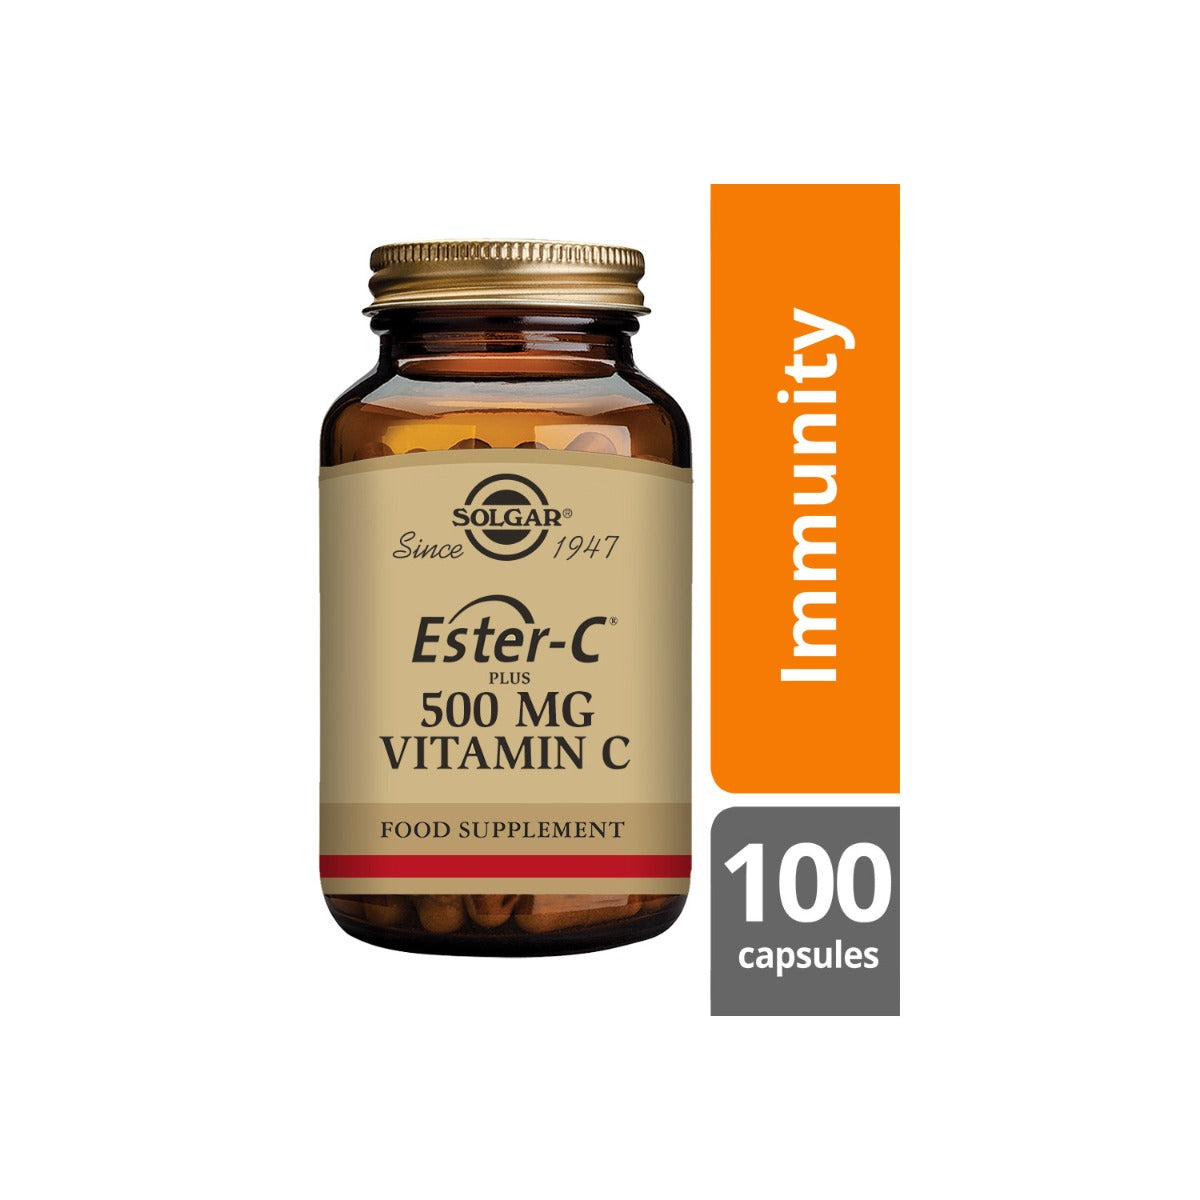 Solgar® Ester-C Plus 500 mg Vitamin C Vegetable Capsules - Pack of 100